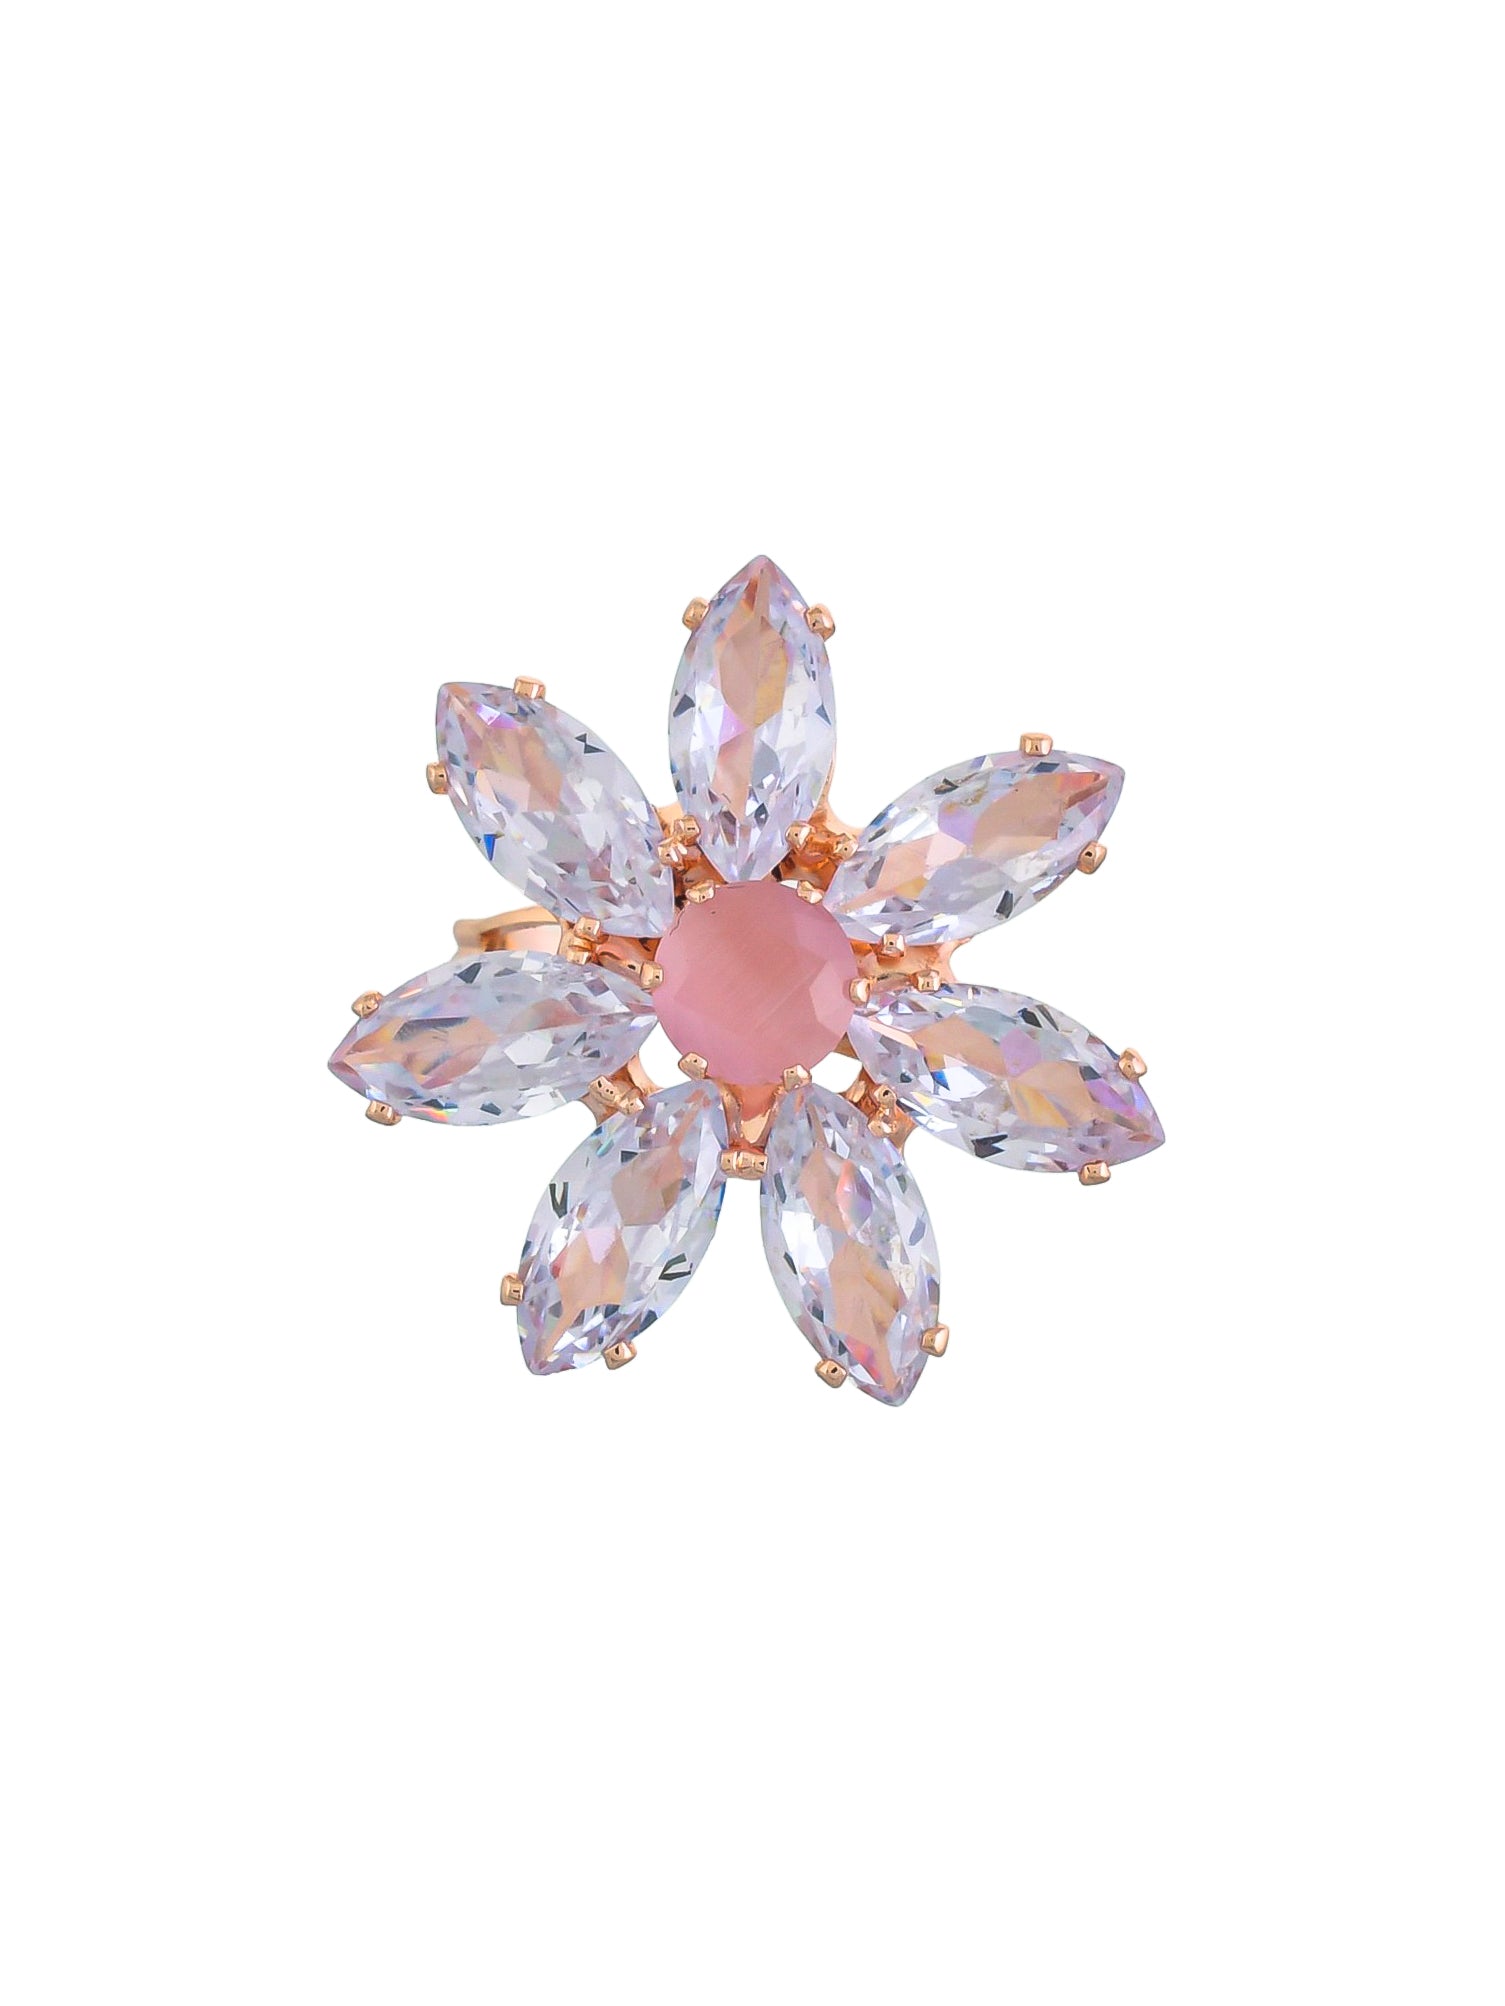 Adjustable flower design american diamond rings for girls & womens.